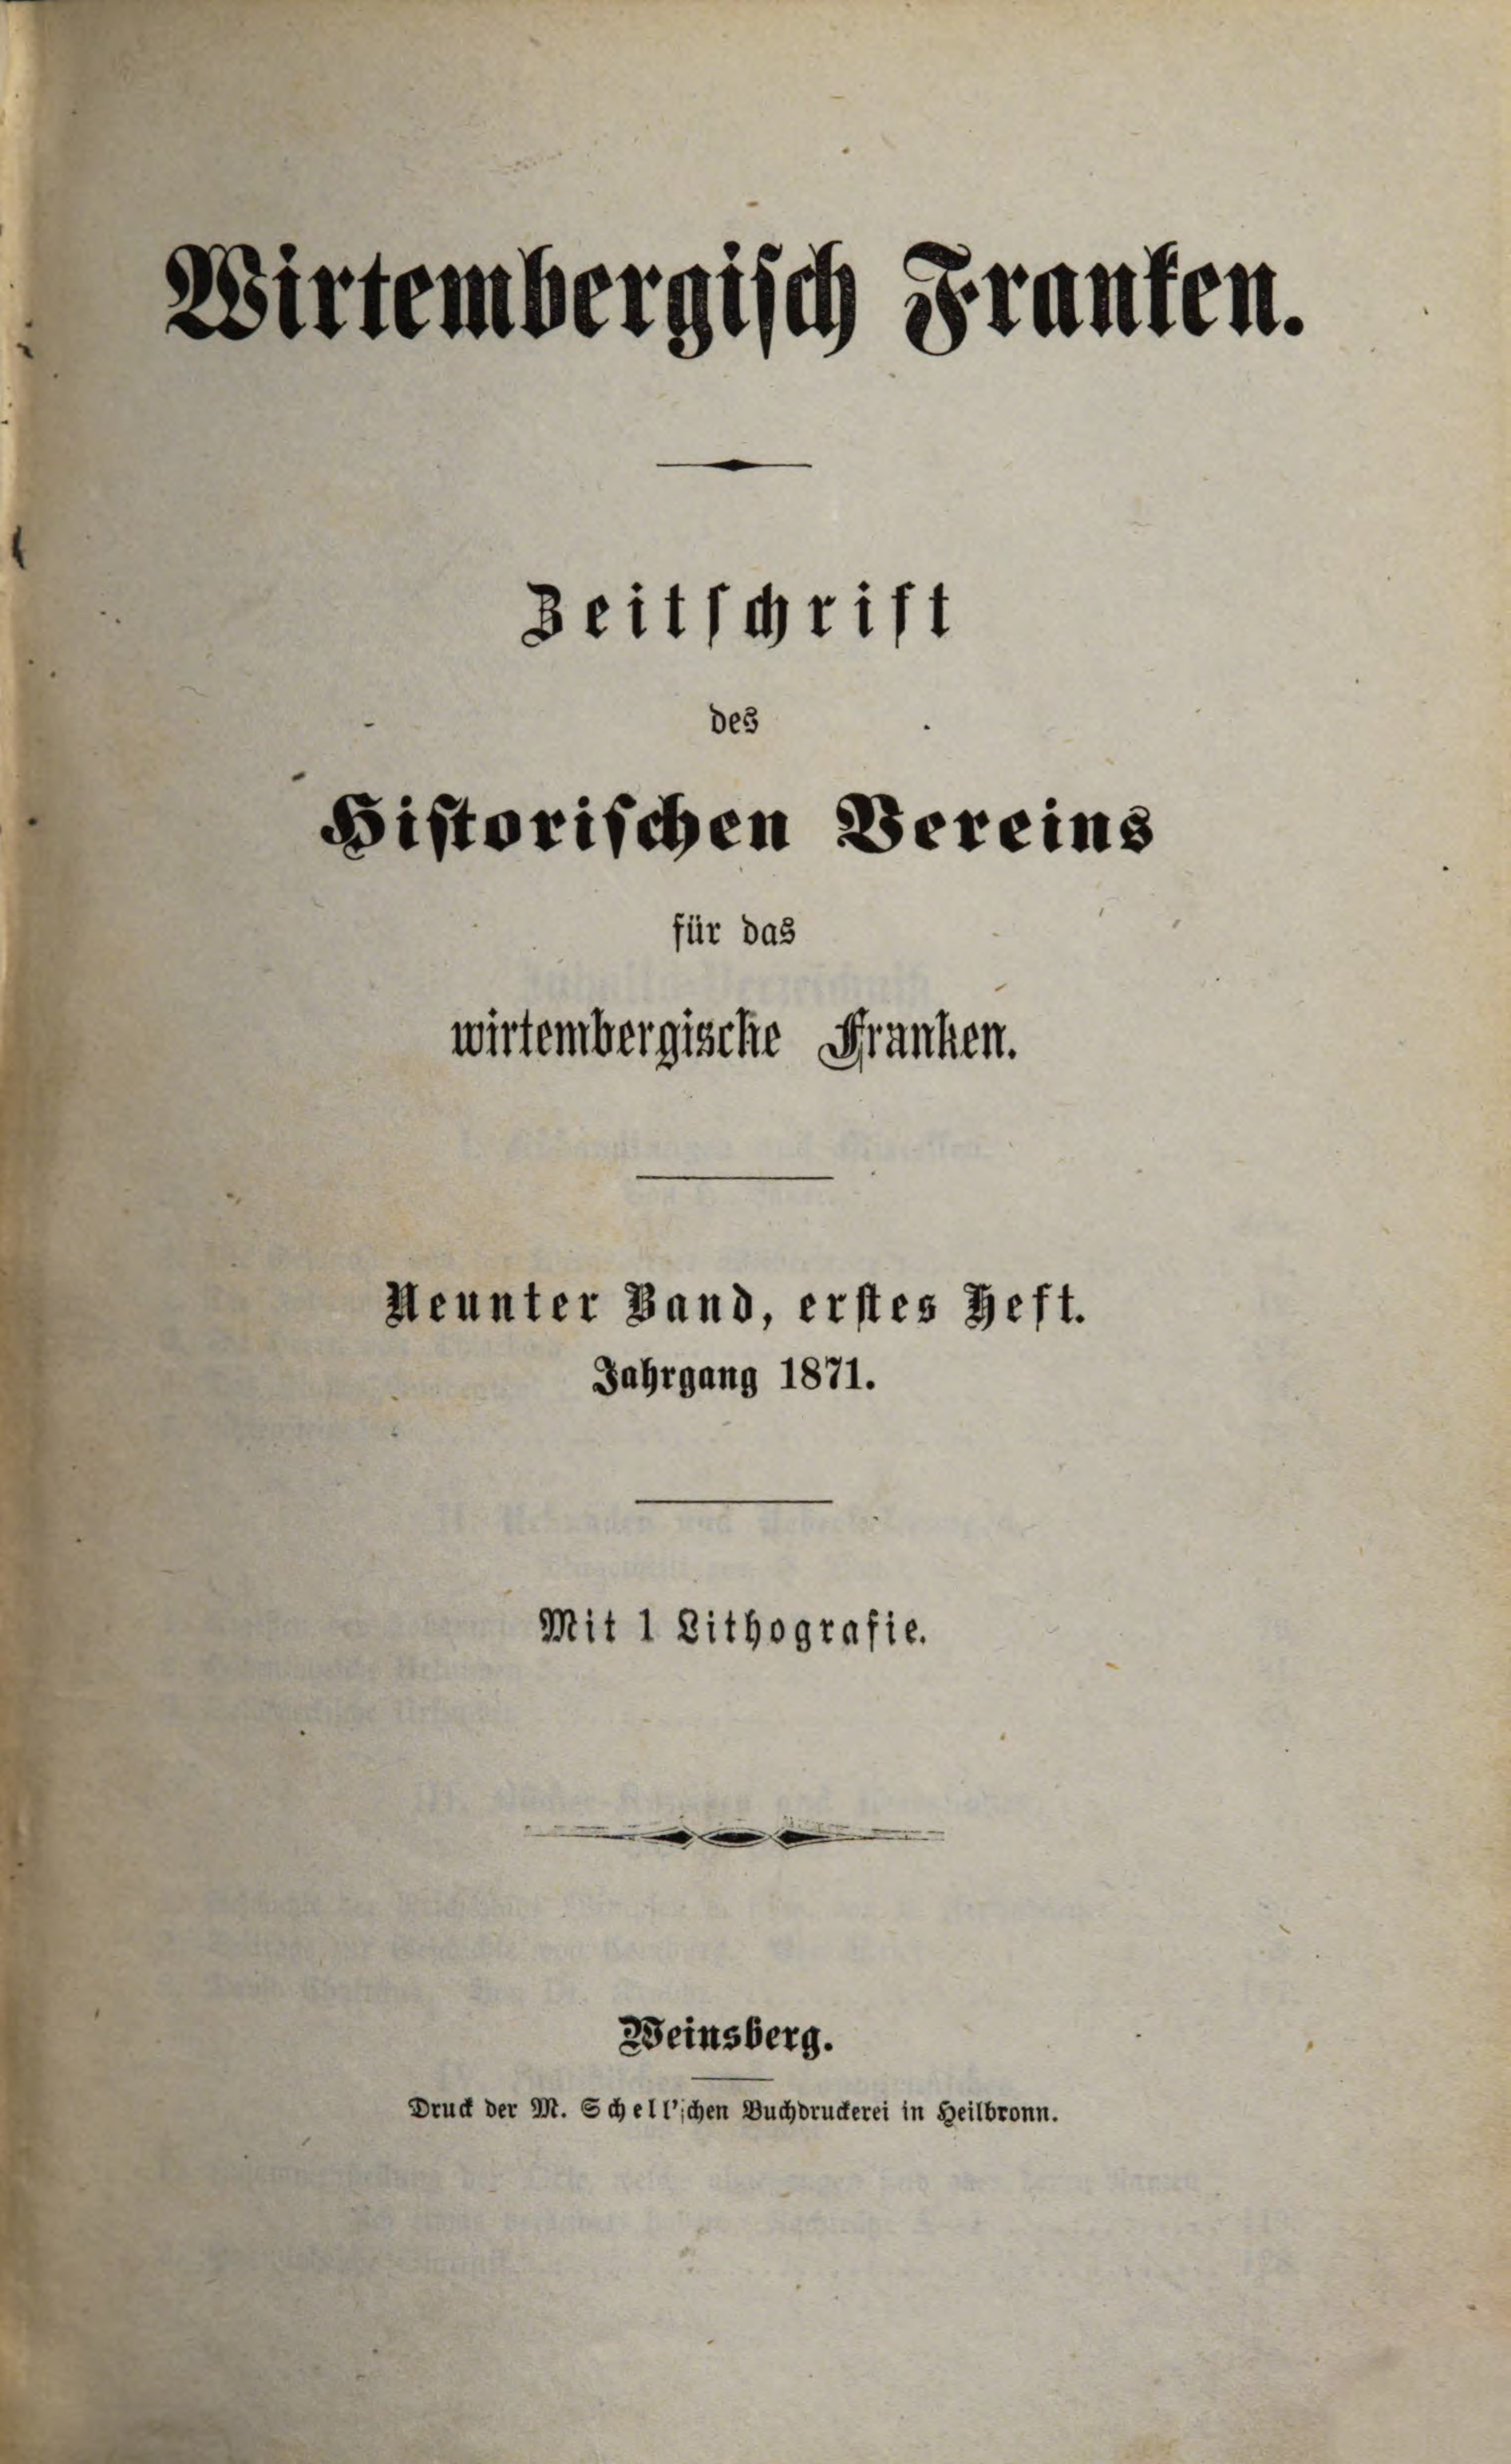                     Ansehen Bd. 9 Nr. 1 (1871): Zeitschrift des Historischen Vereins für das Württembergische Franken
                